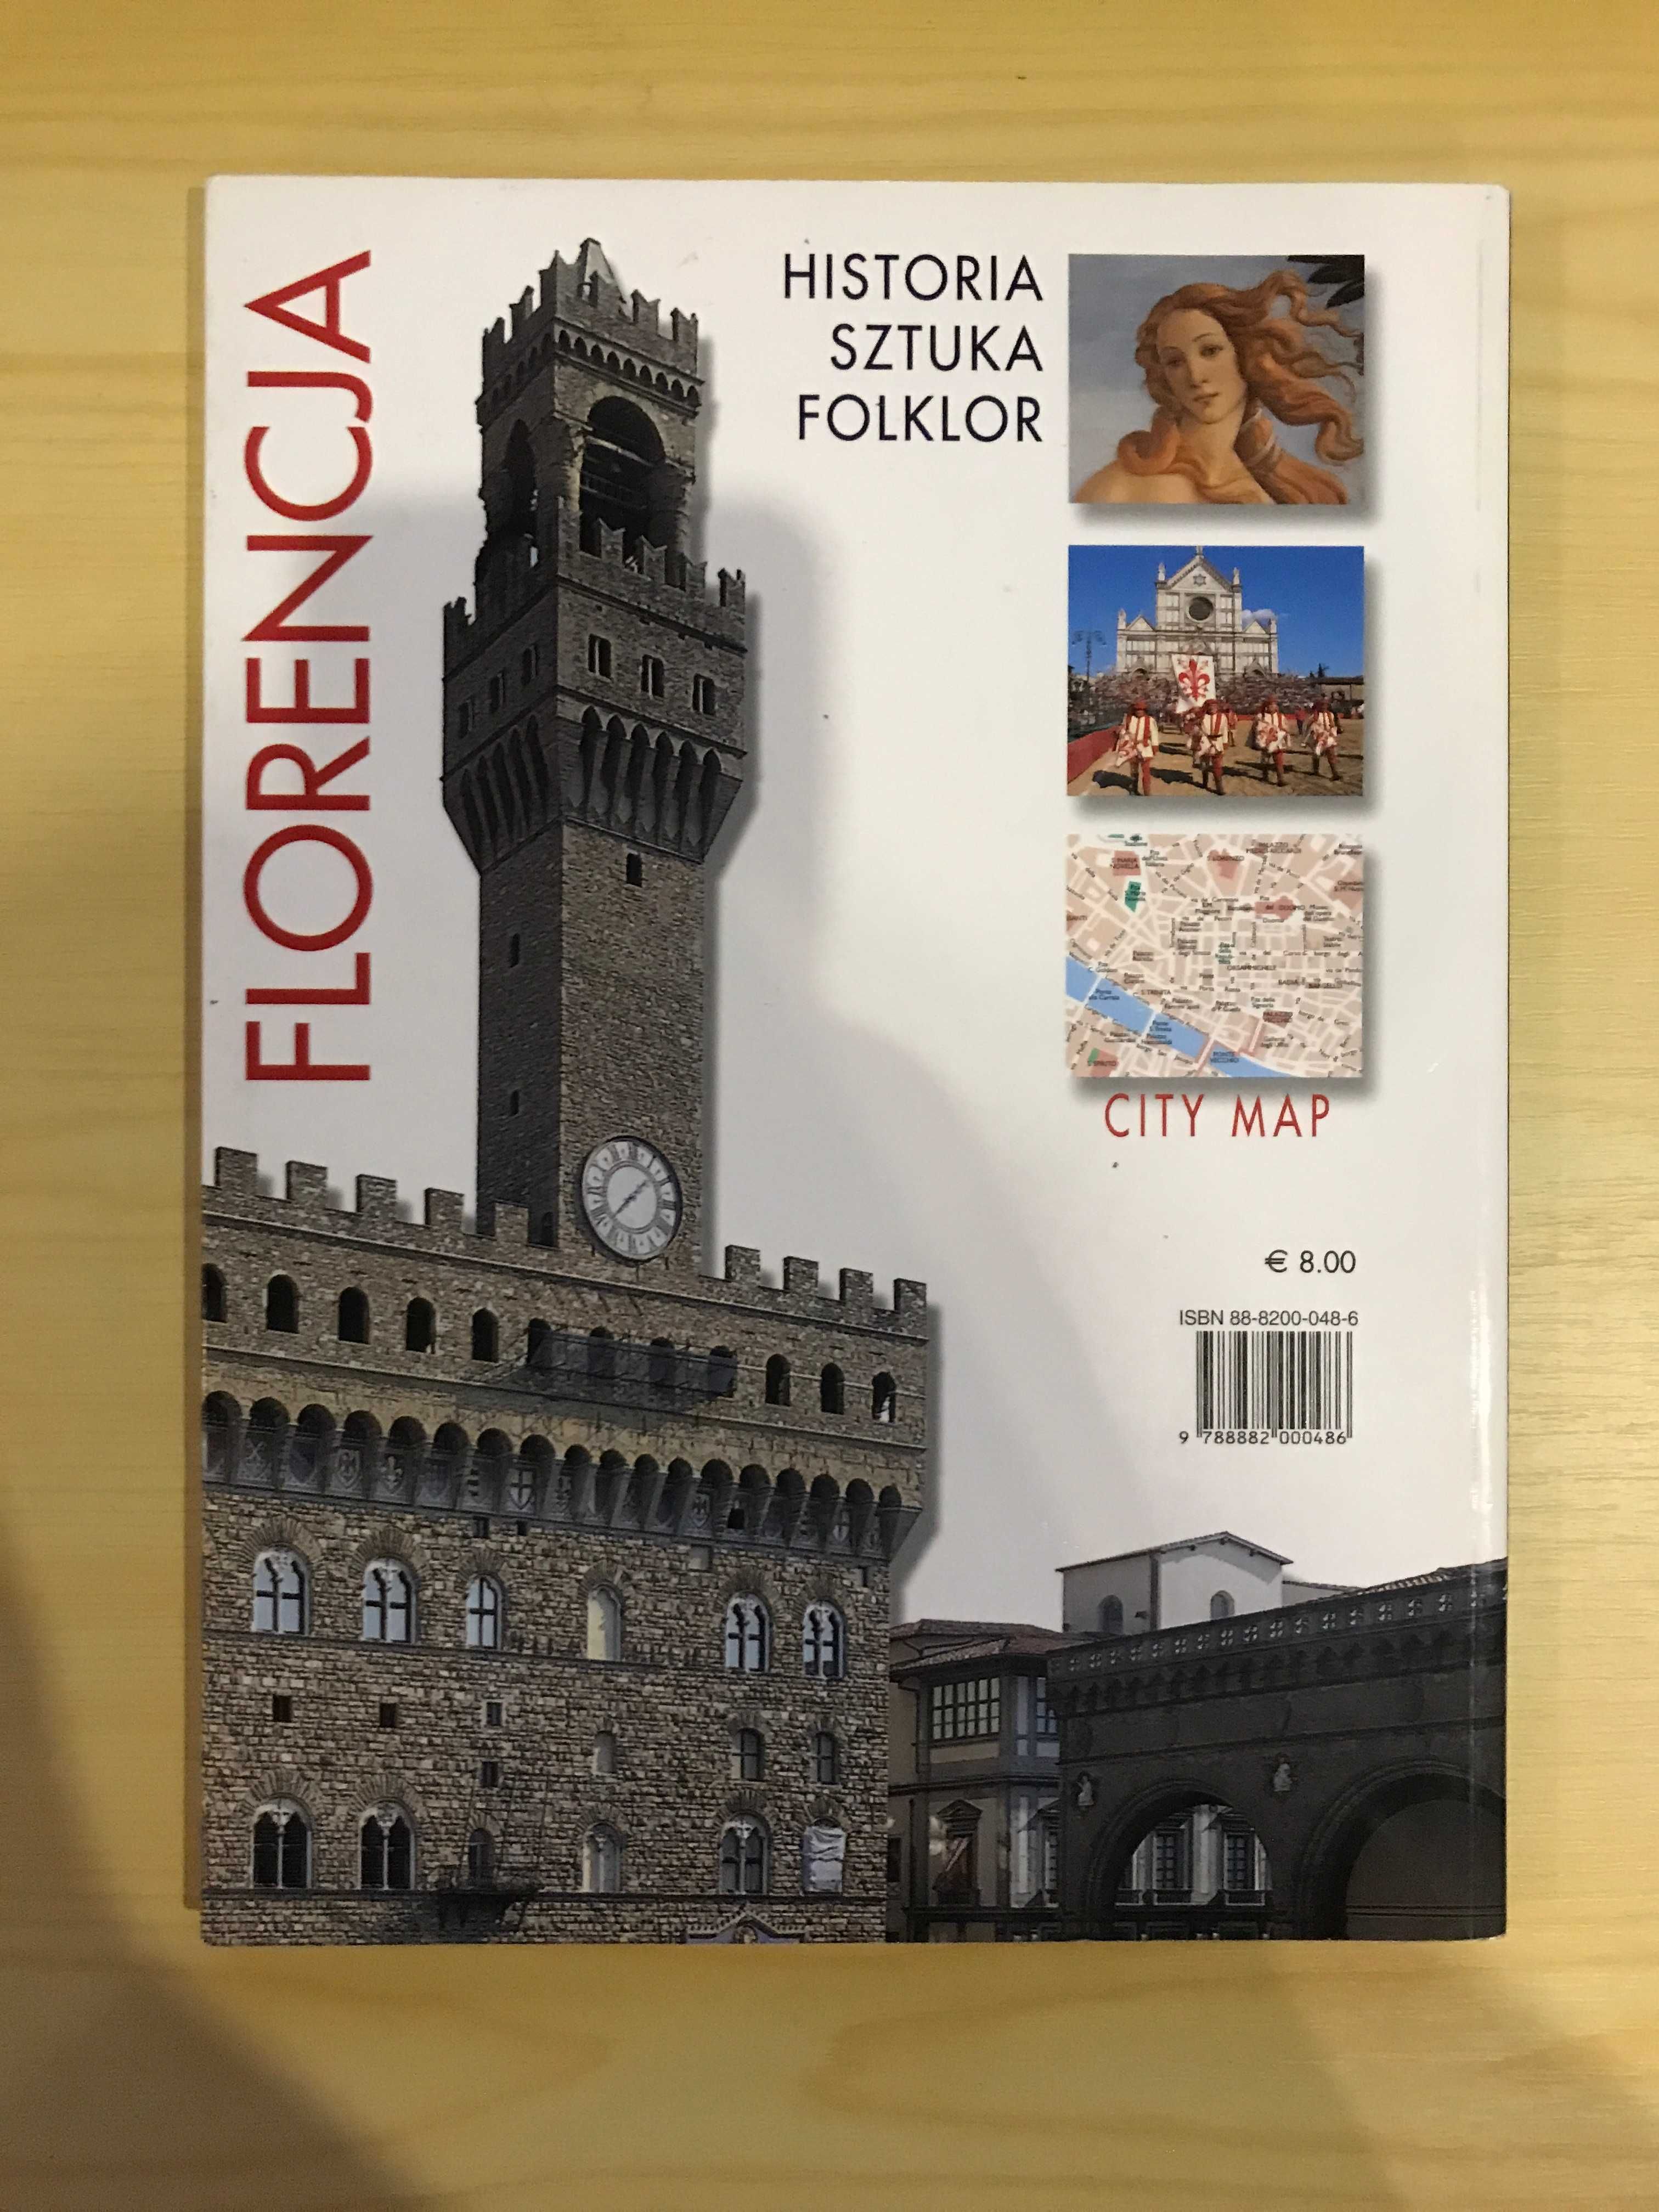 Florencja wszystkie arcydzieła historia sztuka folklor